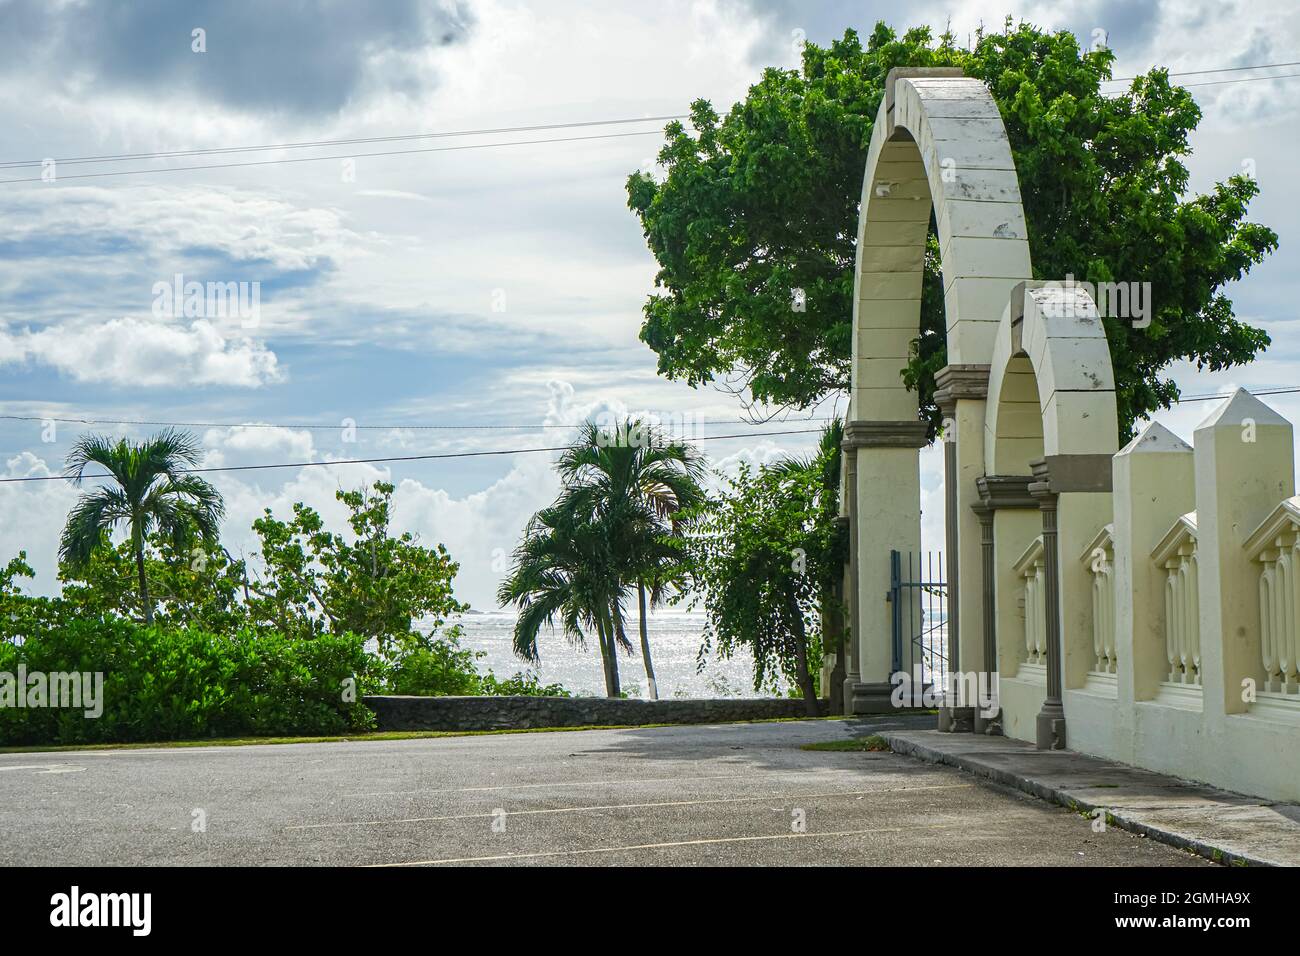 A gate in Guam Stock Photo